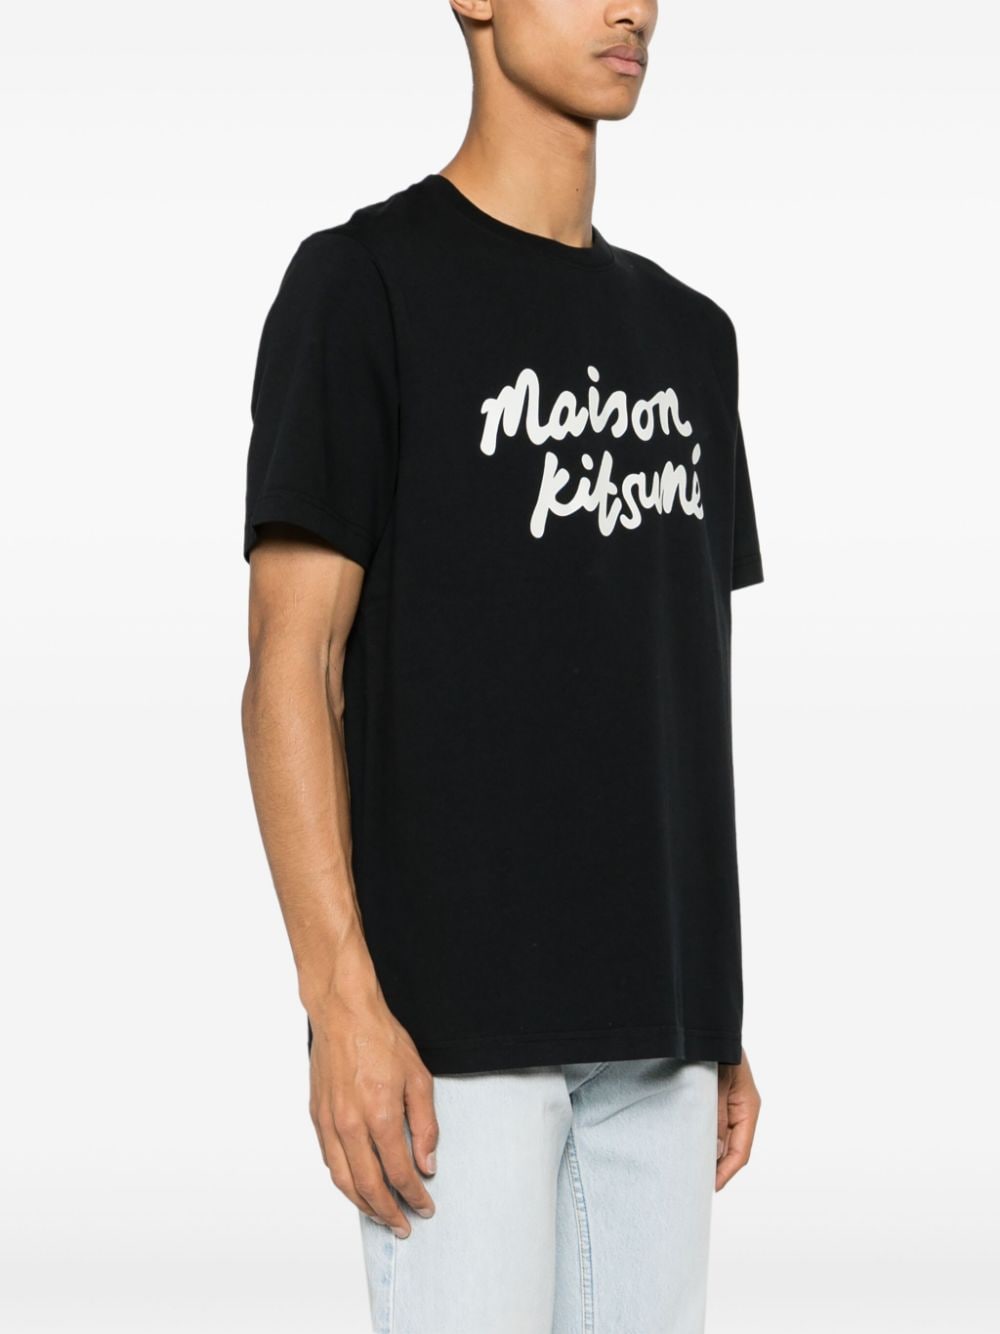 Maison Kitsuné - T-shirt black Handwriting Comfort - Lothaire